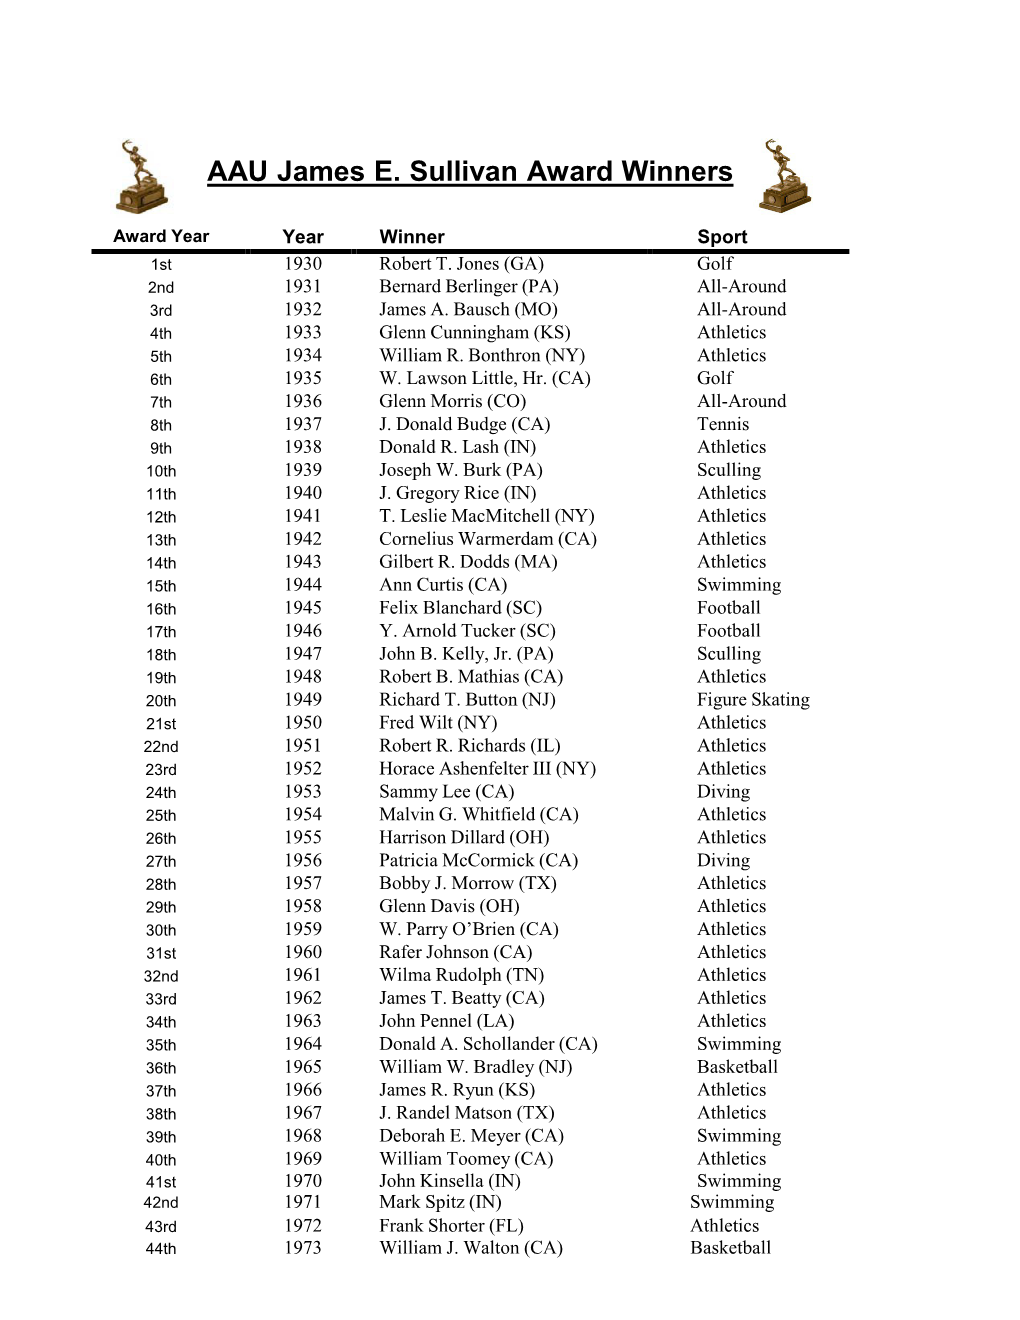 AAU Sullivan Award